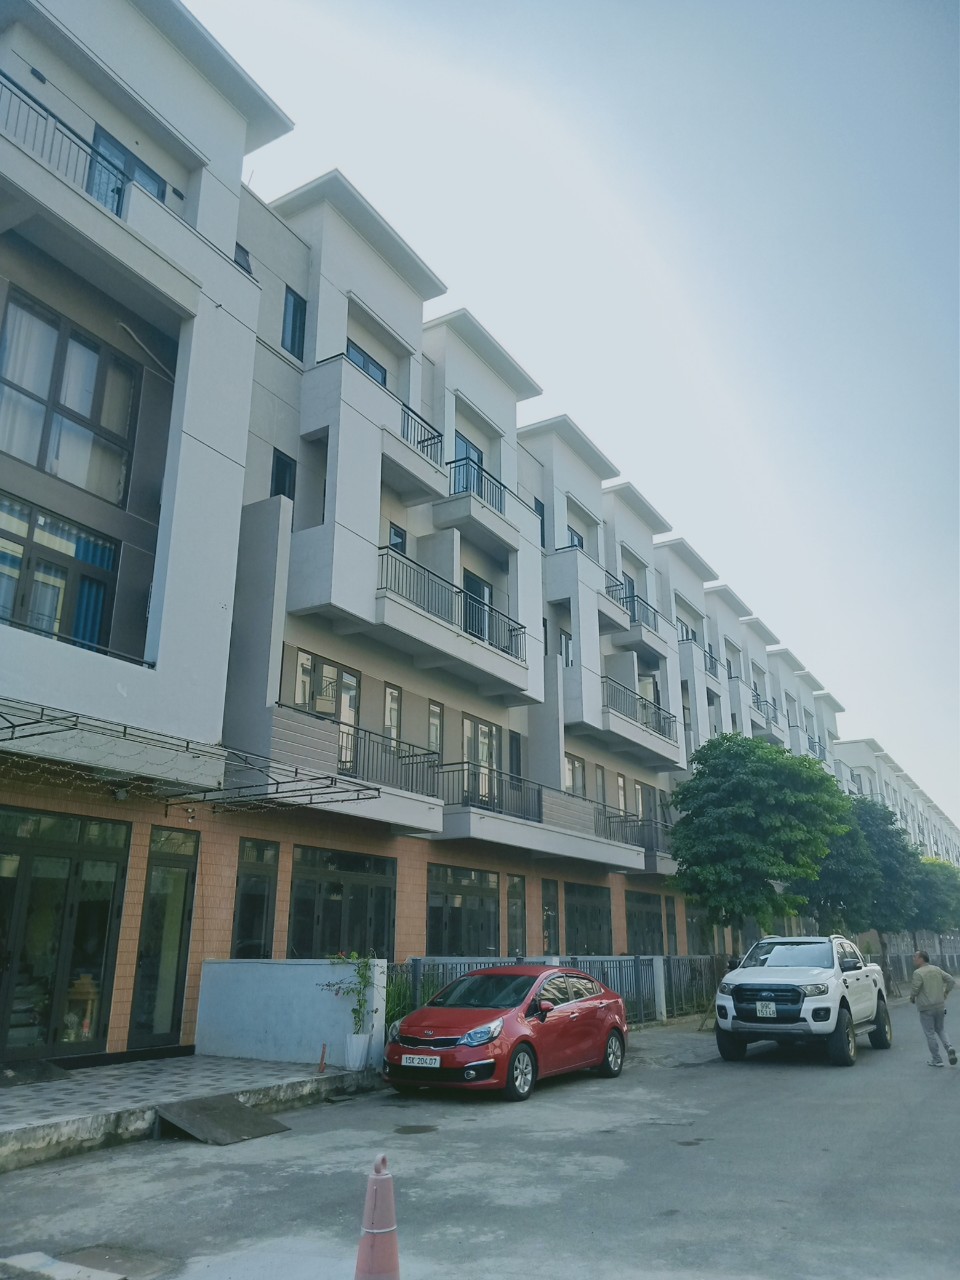 Shophouse VSIP Bắc Ninh, chỉ cần 1,8 tỷ - 2,1 tỷ đồng, lãi suất 0% trong 2 năm